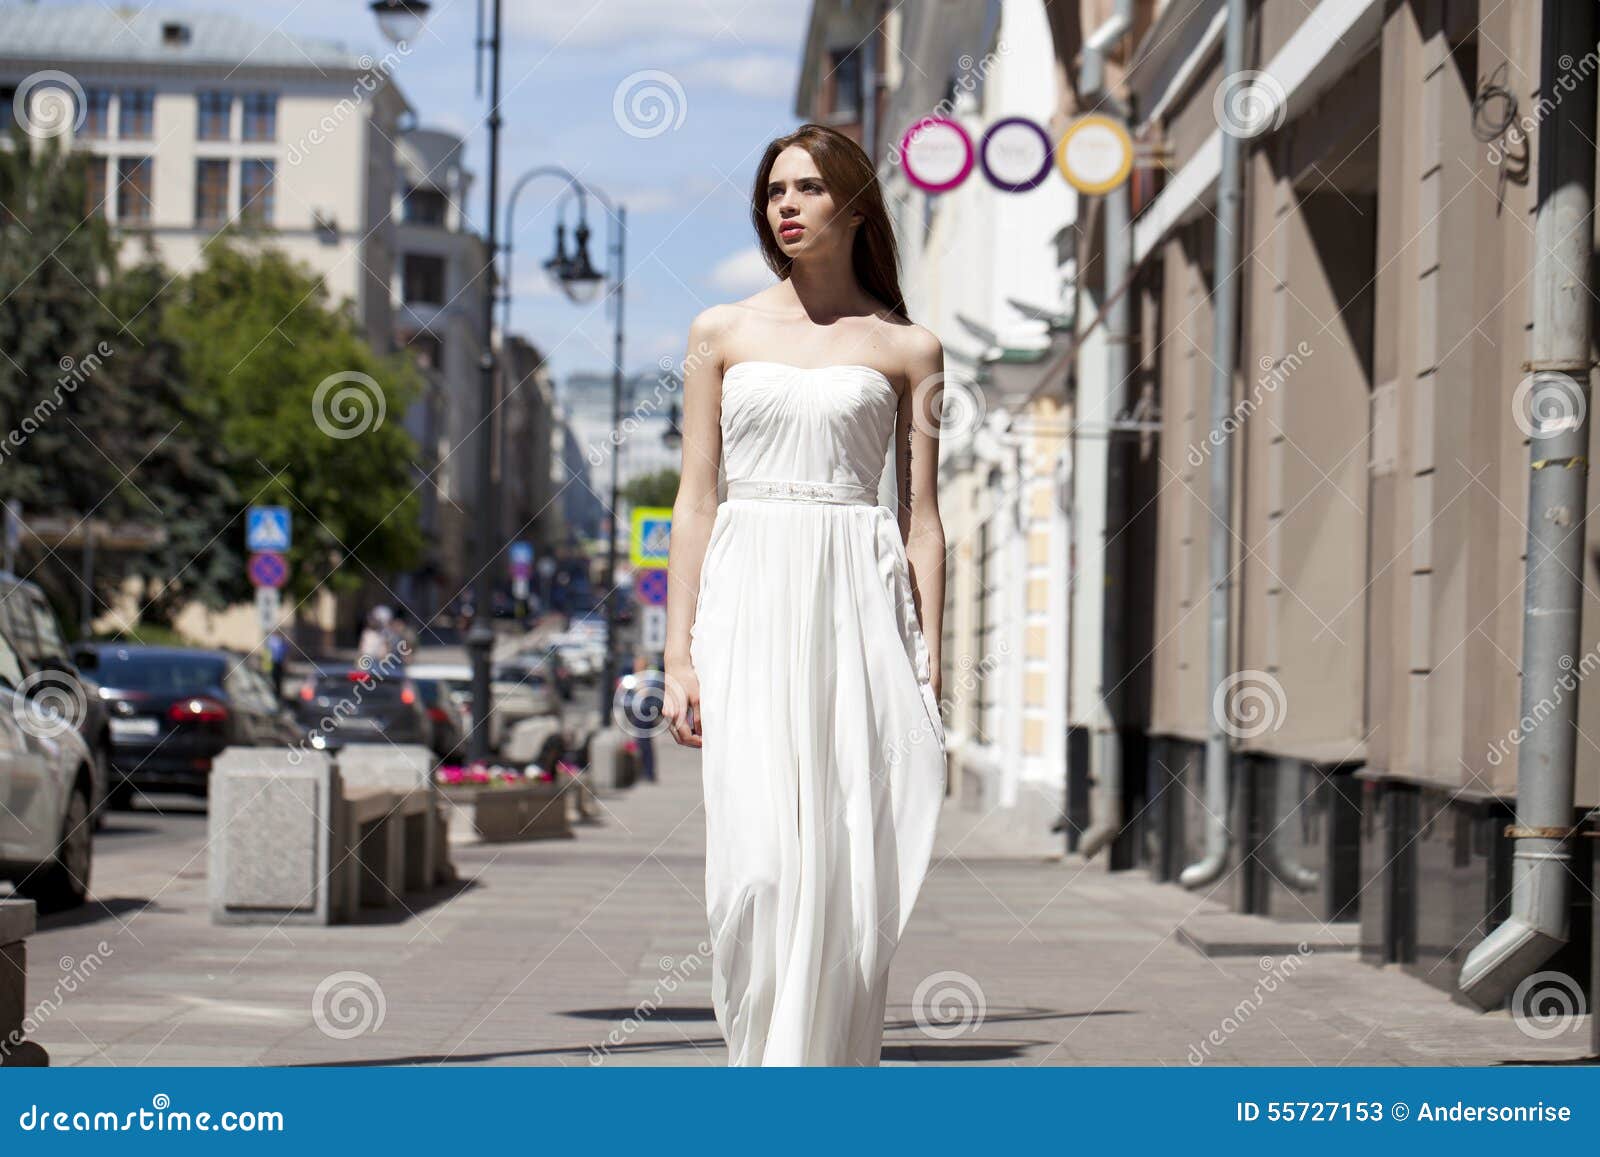 Full Length Portrait of Beautiful Model Woman Walking in White D Stock ...